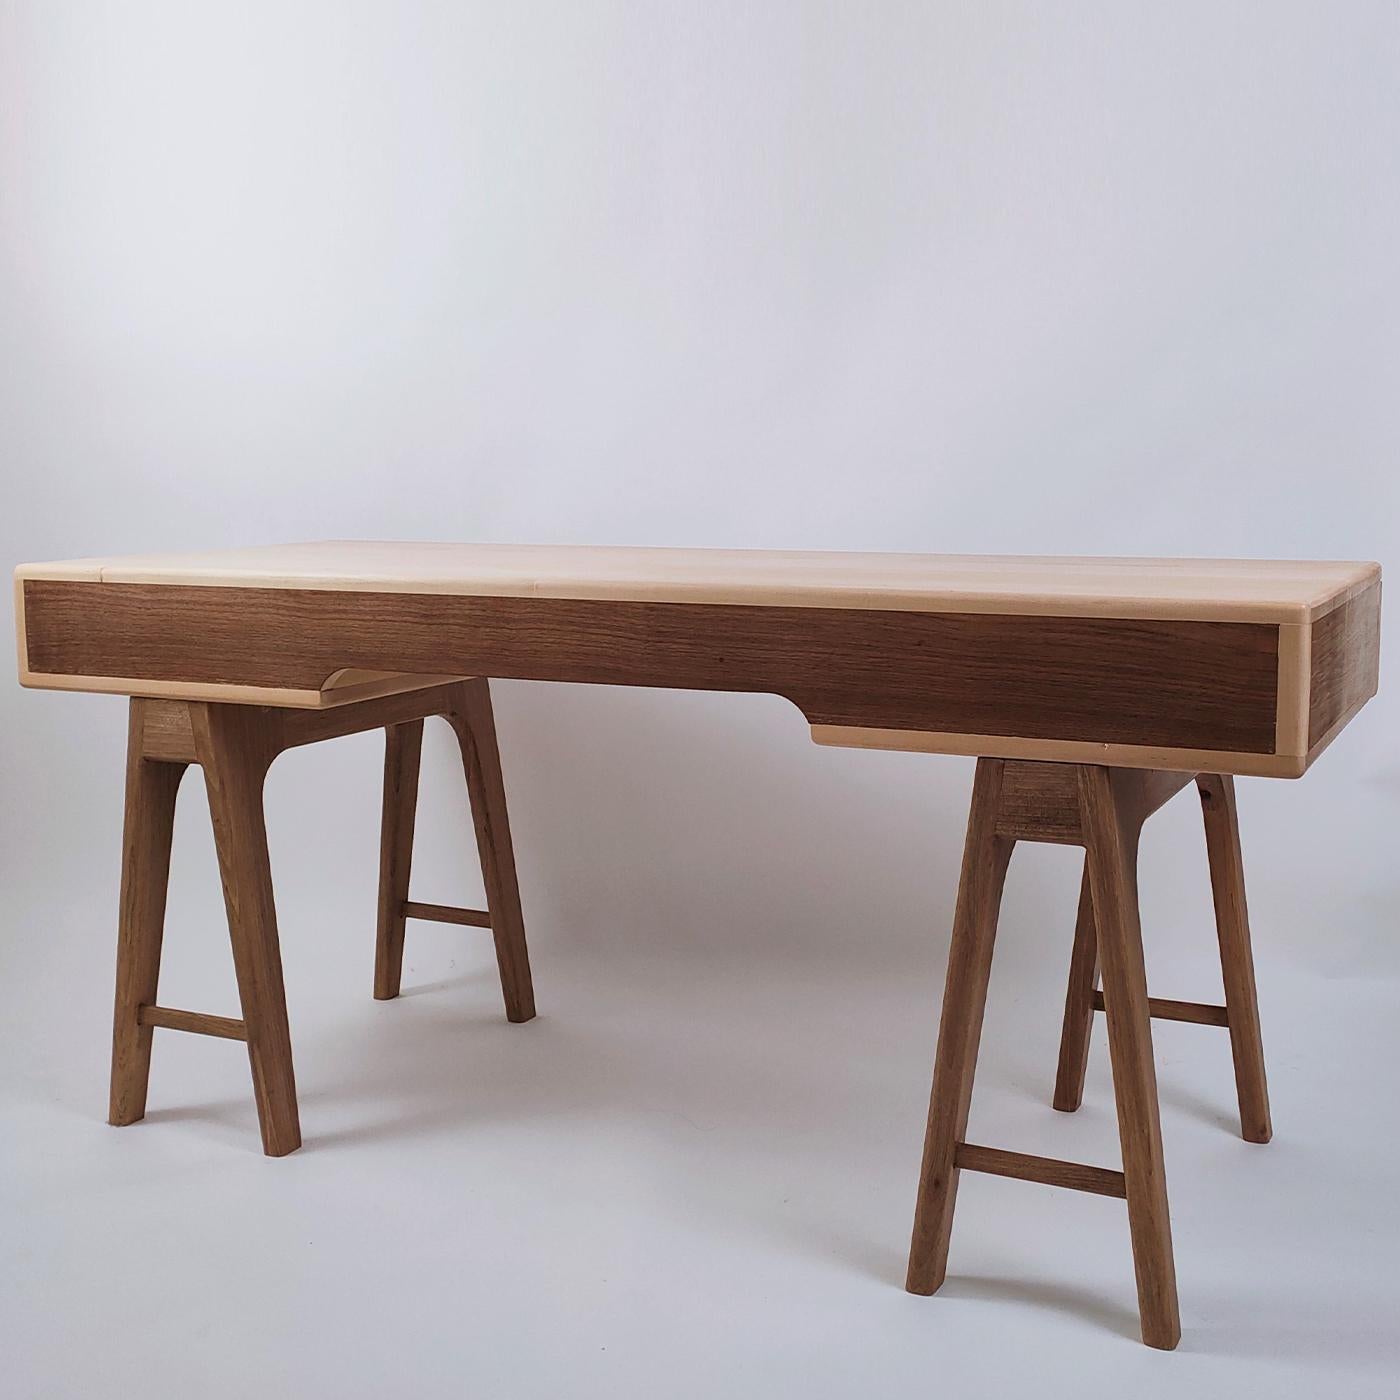 Der Nathalie-Schreibtisch ist der ultimative Arbeitsplatz mit zwei Bockbeinen und einer geräumigen Tischplatte mit versteckten Schubladen, die das Büro stilvoll aufräumen. Dieser Schreibtisch im skandinavischen Stil, der die Vorliebe für schlichte,